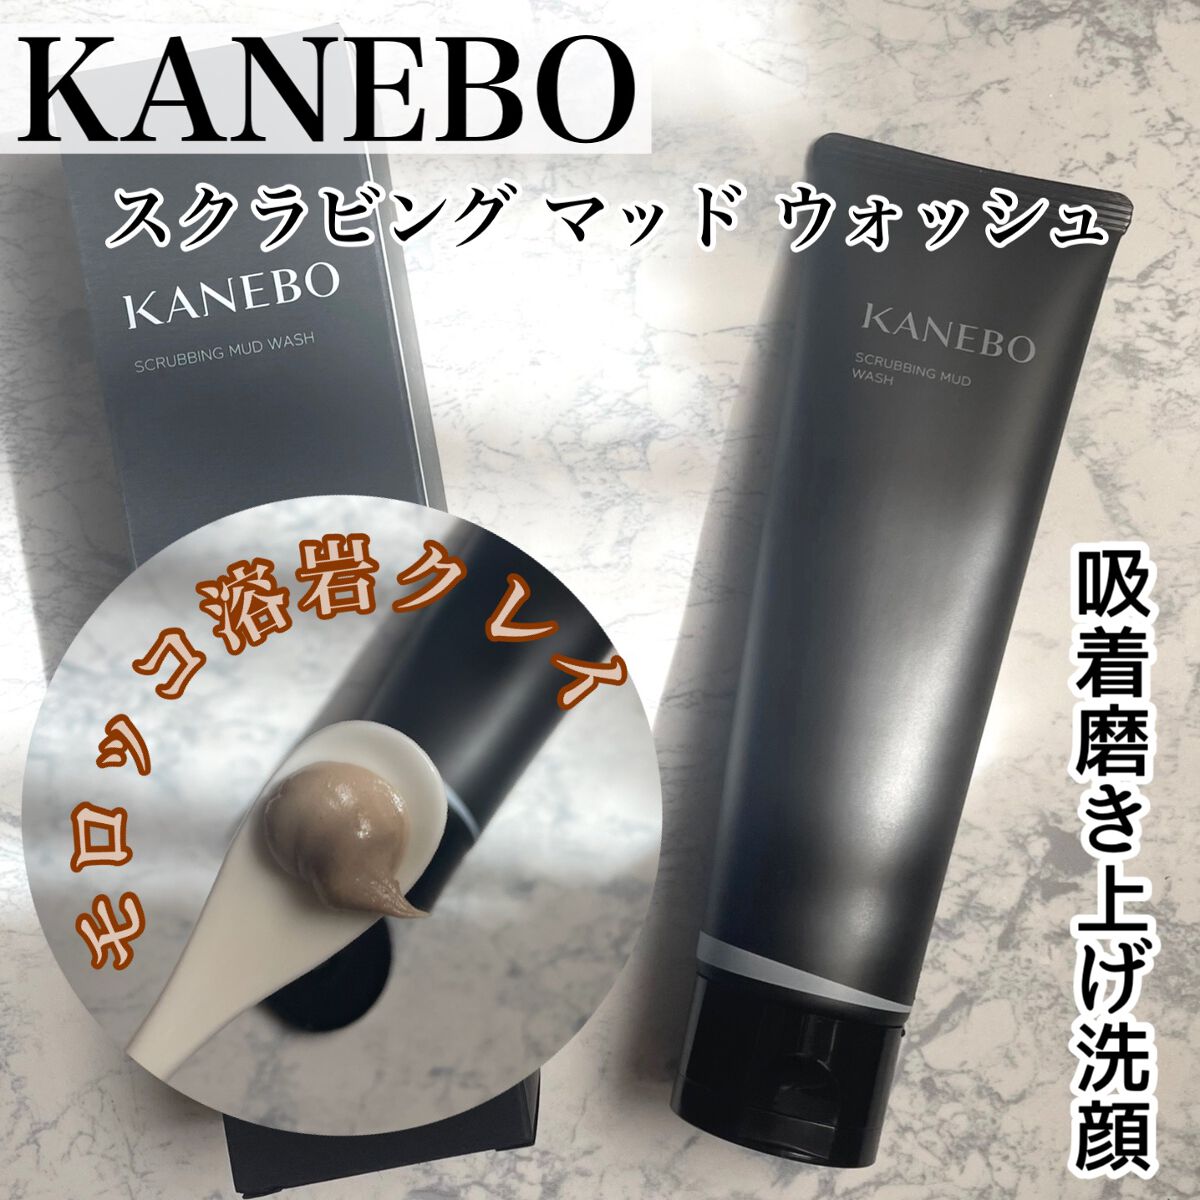 2021新商品 KANEBO スクラビングマッドウォッシュ 10包